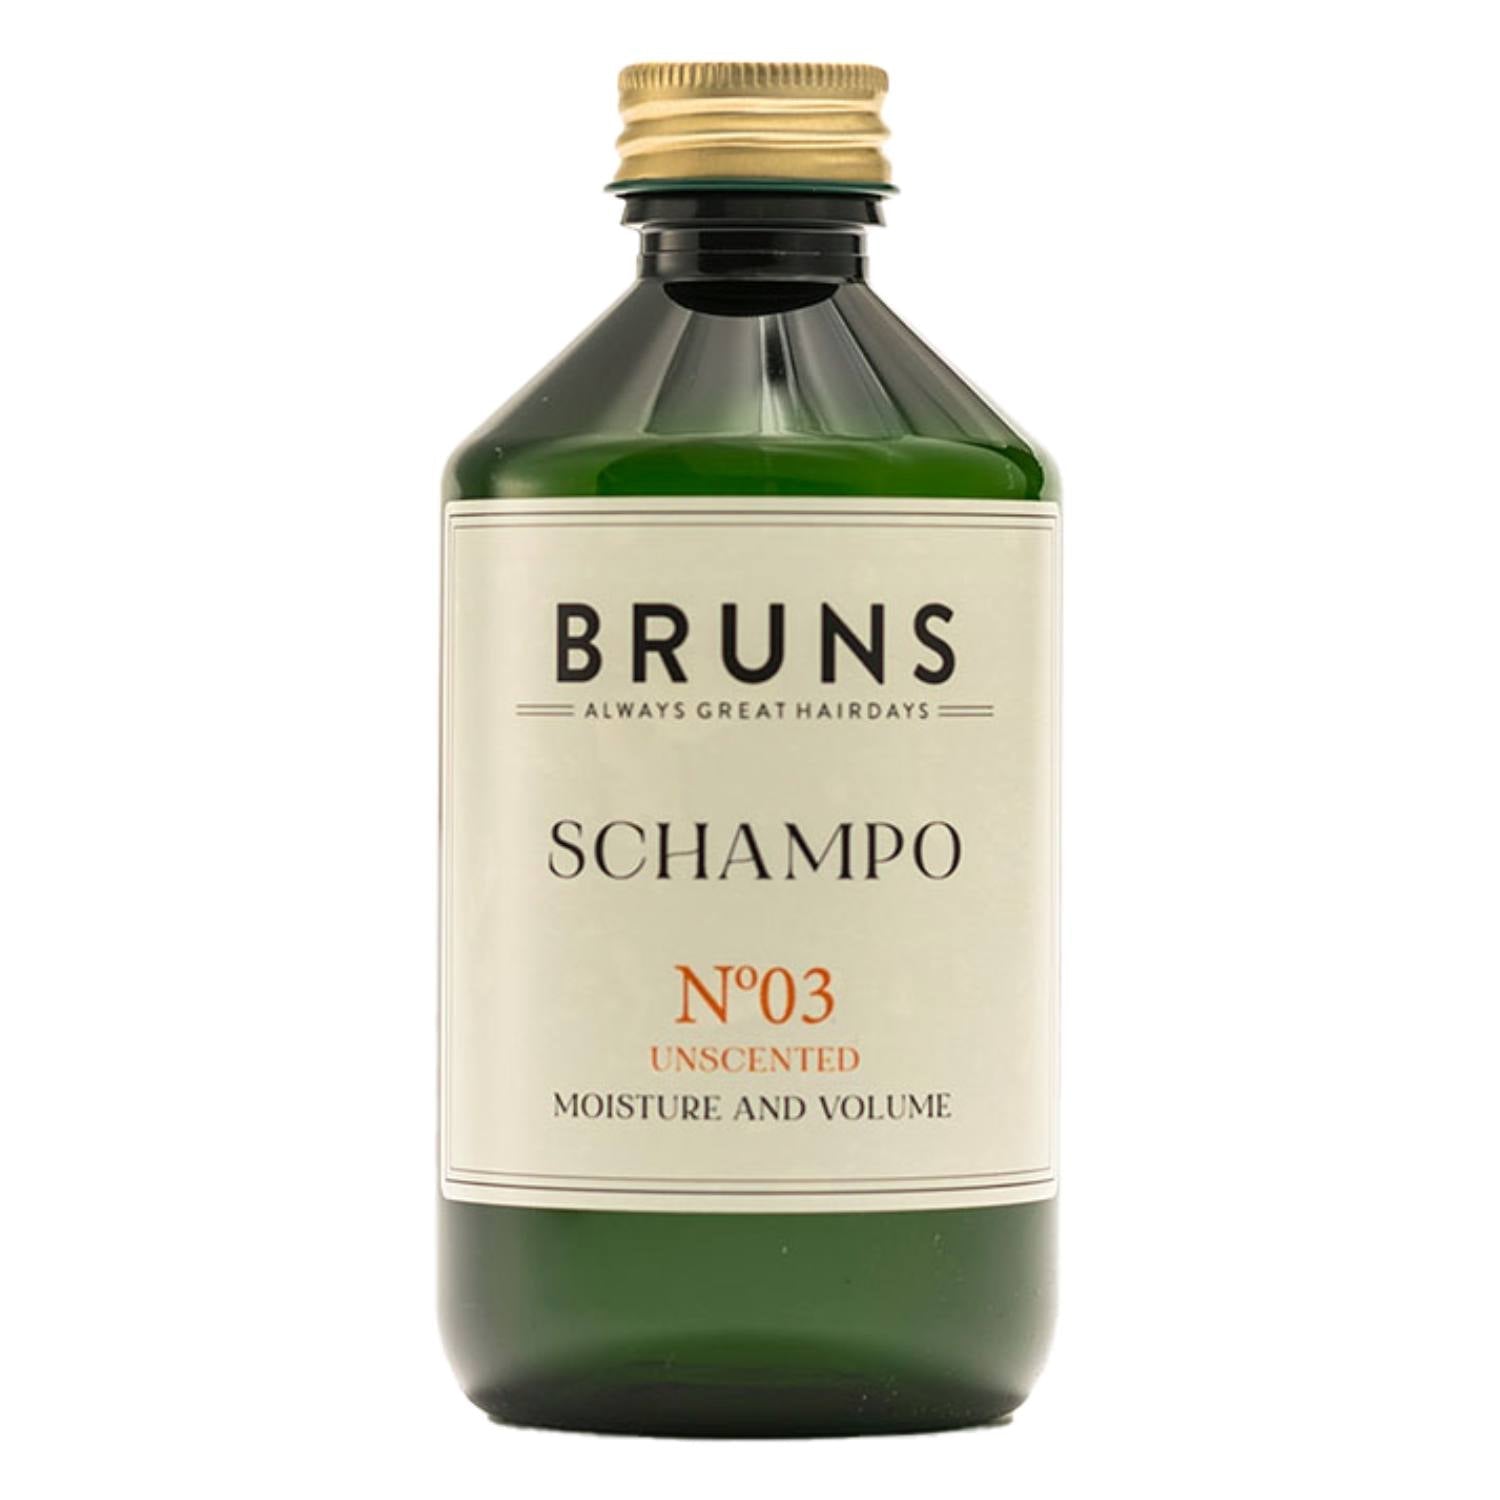 Shampoo Bruns Nº 03, 300 ml.